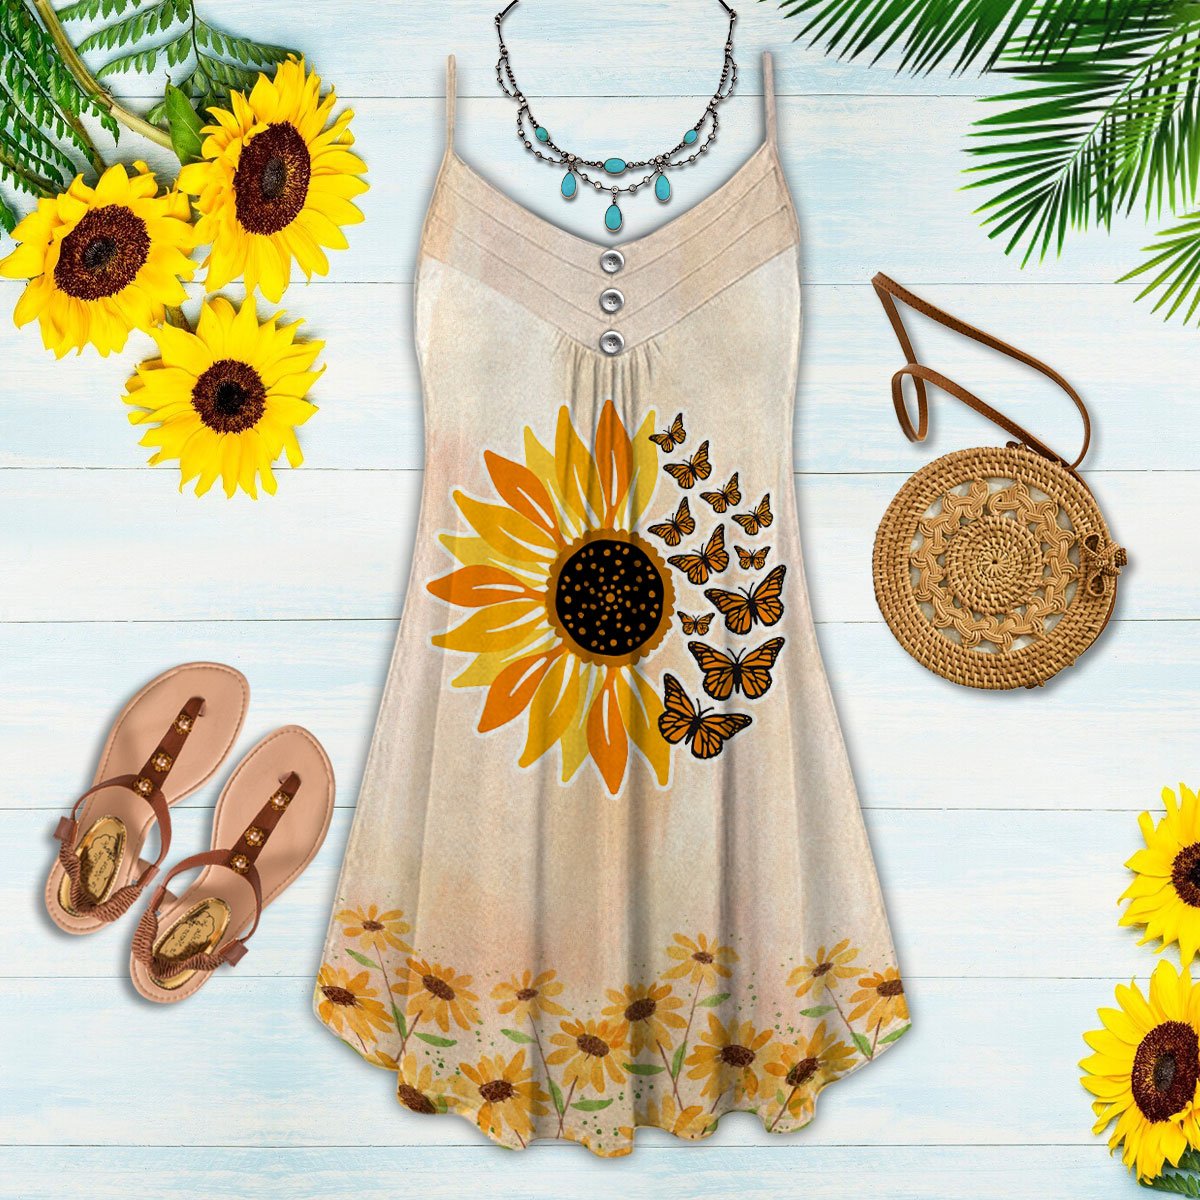 Butterfly And Sunflower Loves Summer - Summer Dress - Owls Matrix LTD